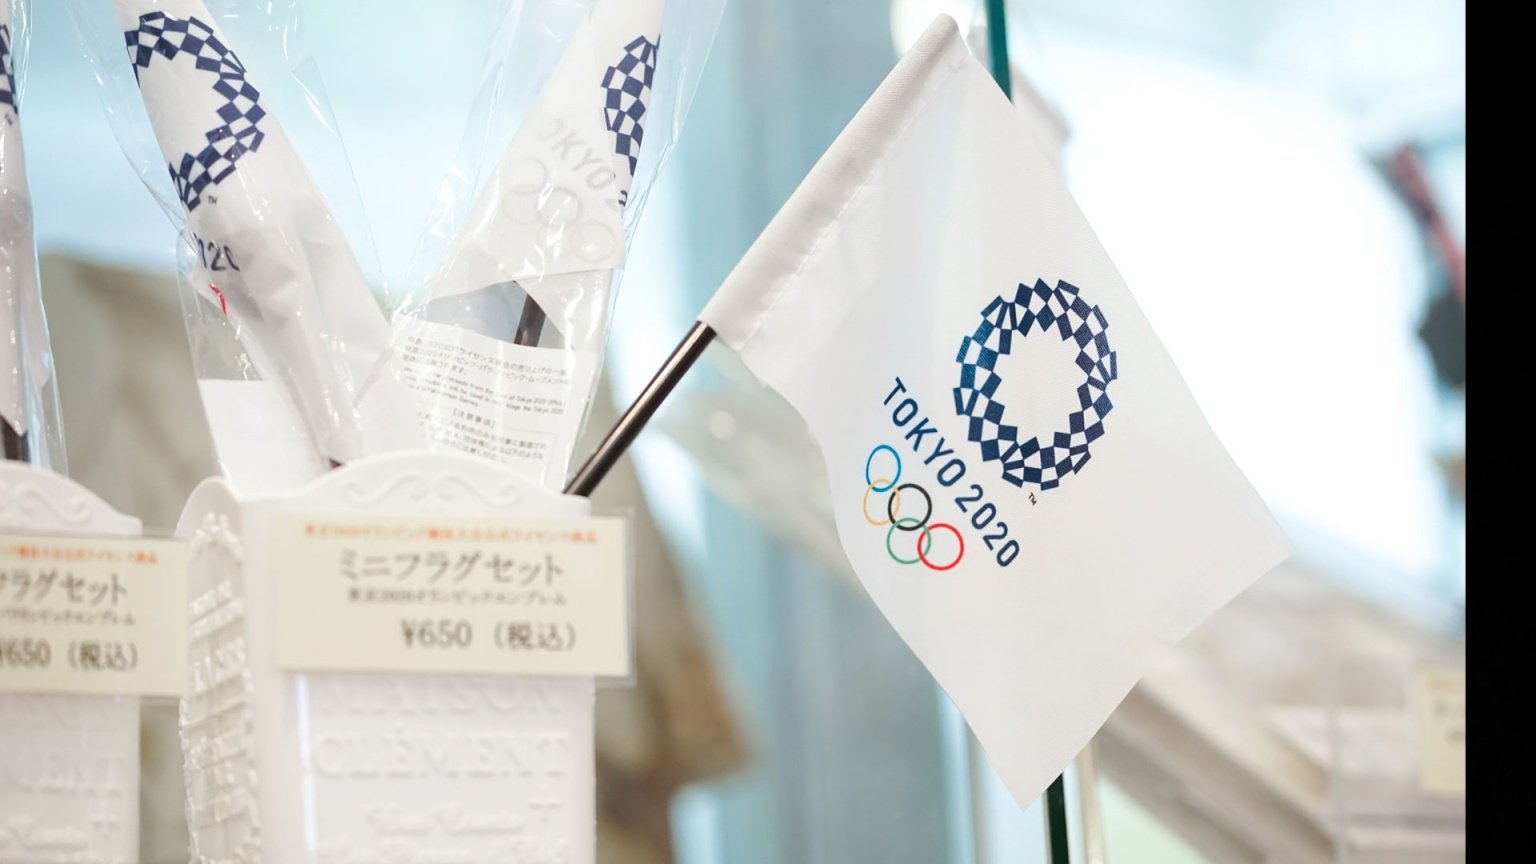 Thế vận hội Tokyo 2020 có nên thay đổi nhận diện thương hiệu? Khi khủng hoảng kiến tạo cơ hội